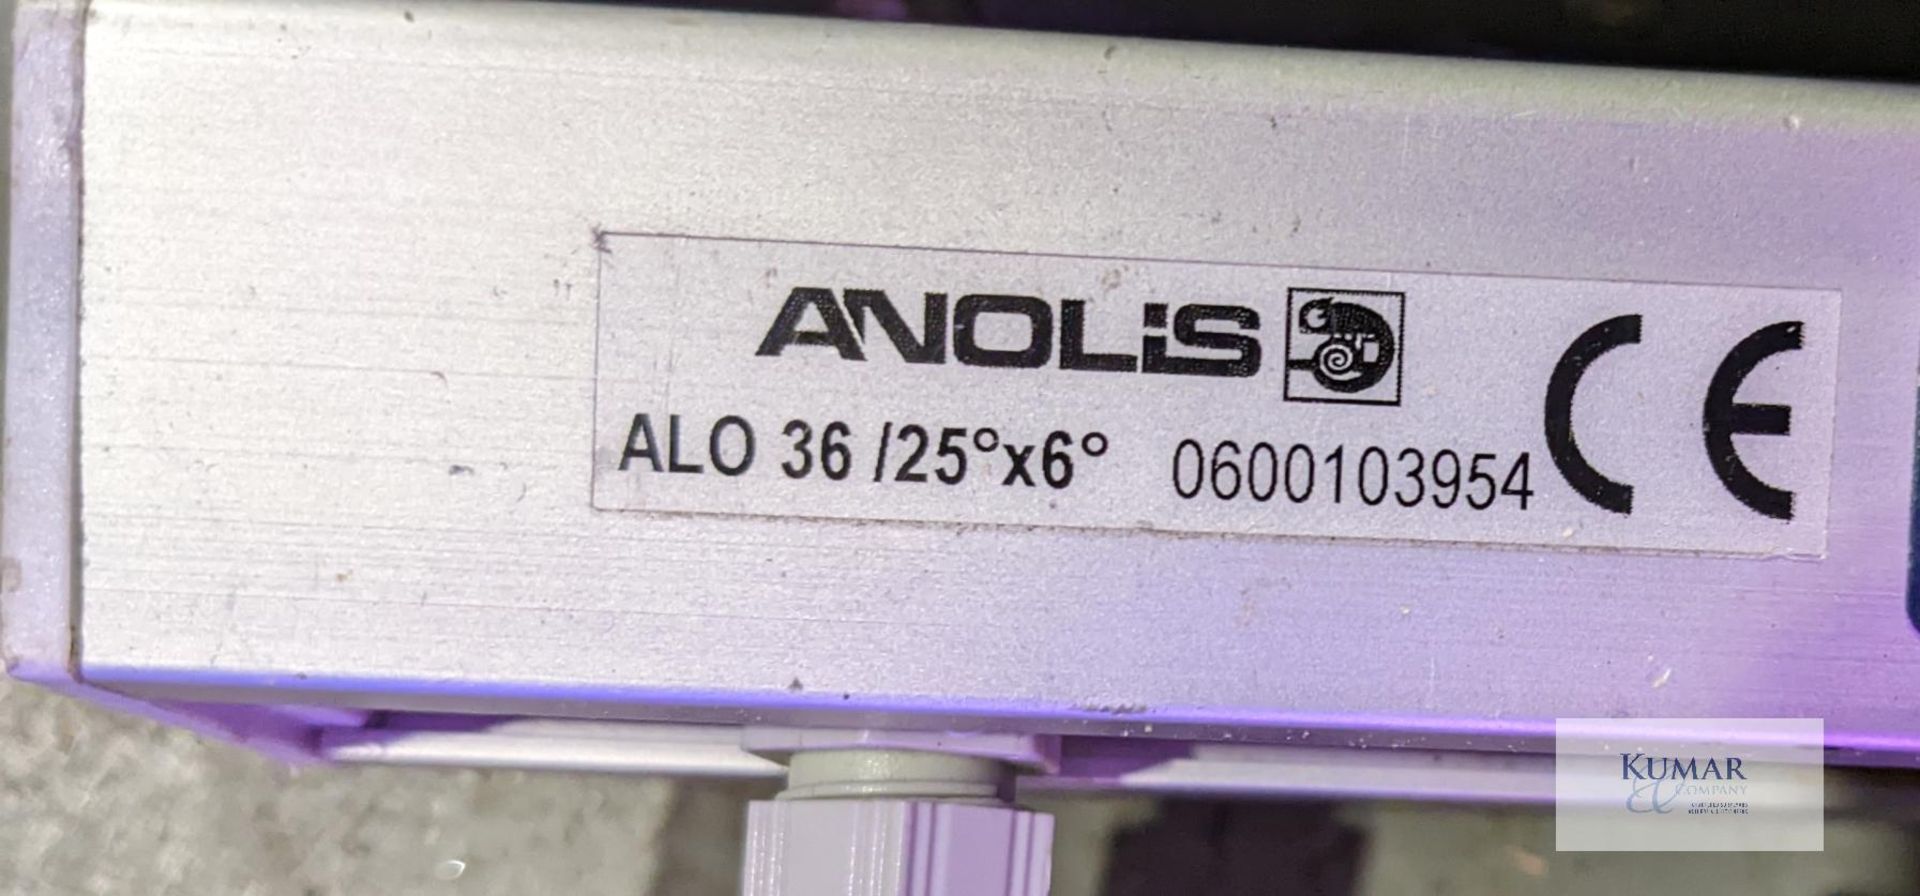 Anolis Arcline 36 LED - 6 Units with case plus job lotCondition: Ex-hireRobe Anolis LED Units: - Image 4 of 40